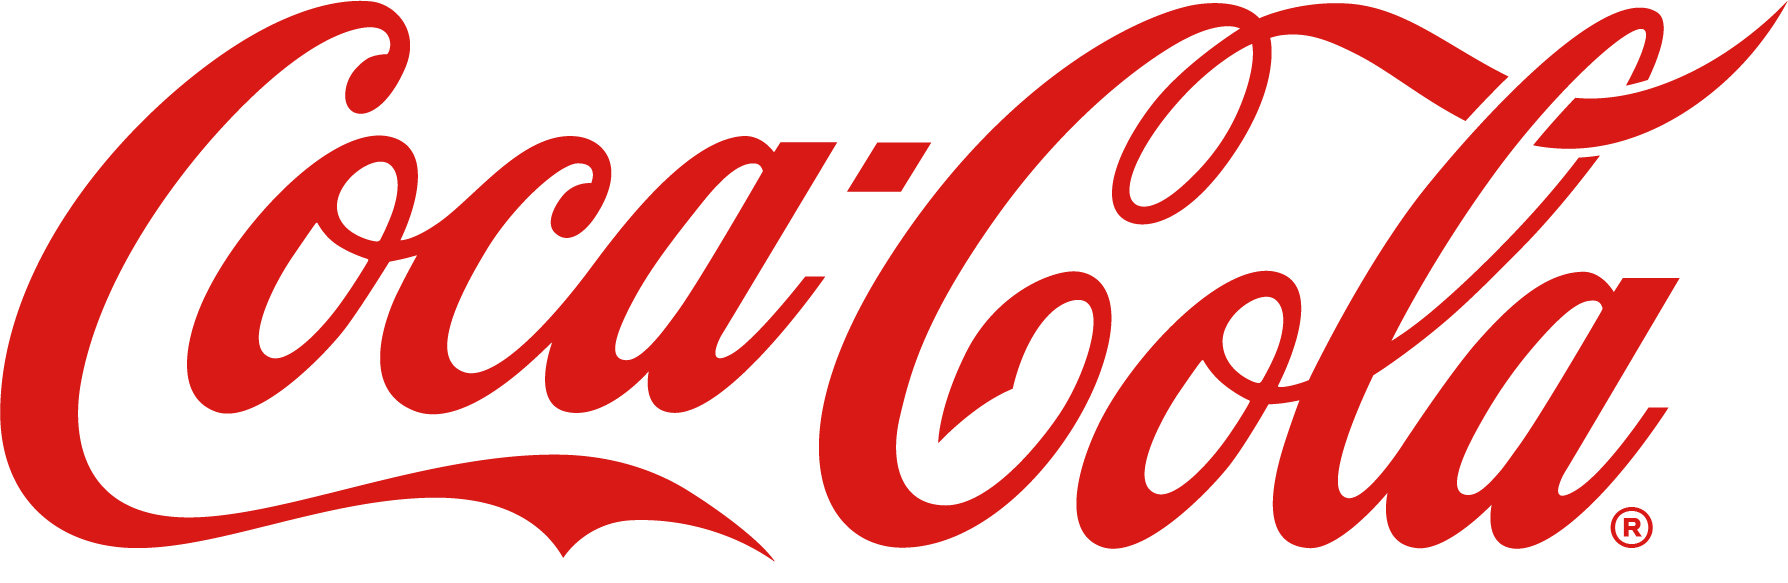 Fundacion Cocacola